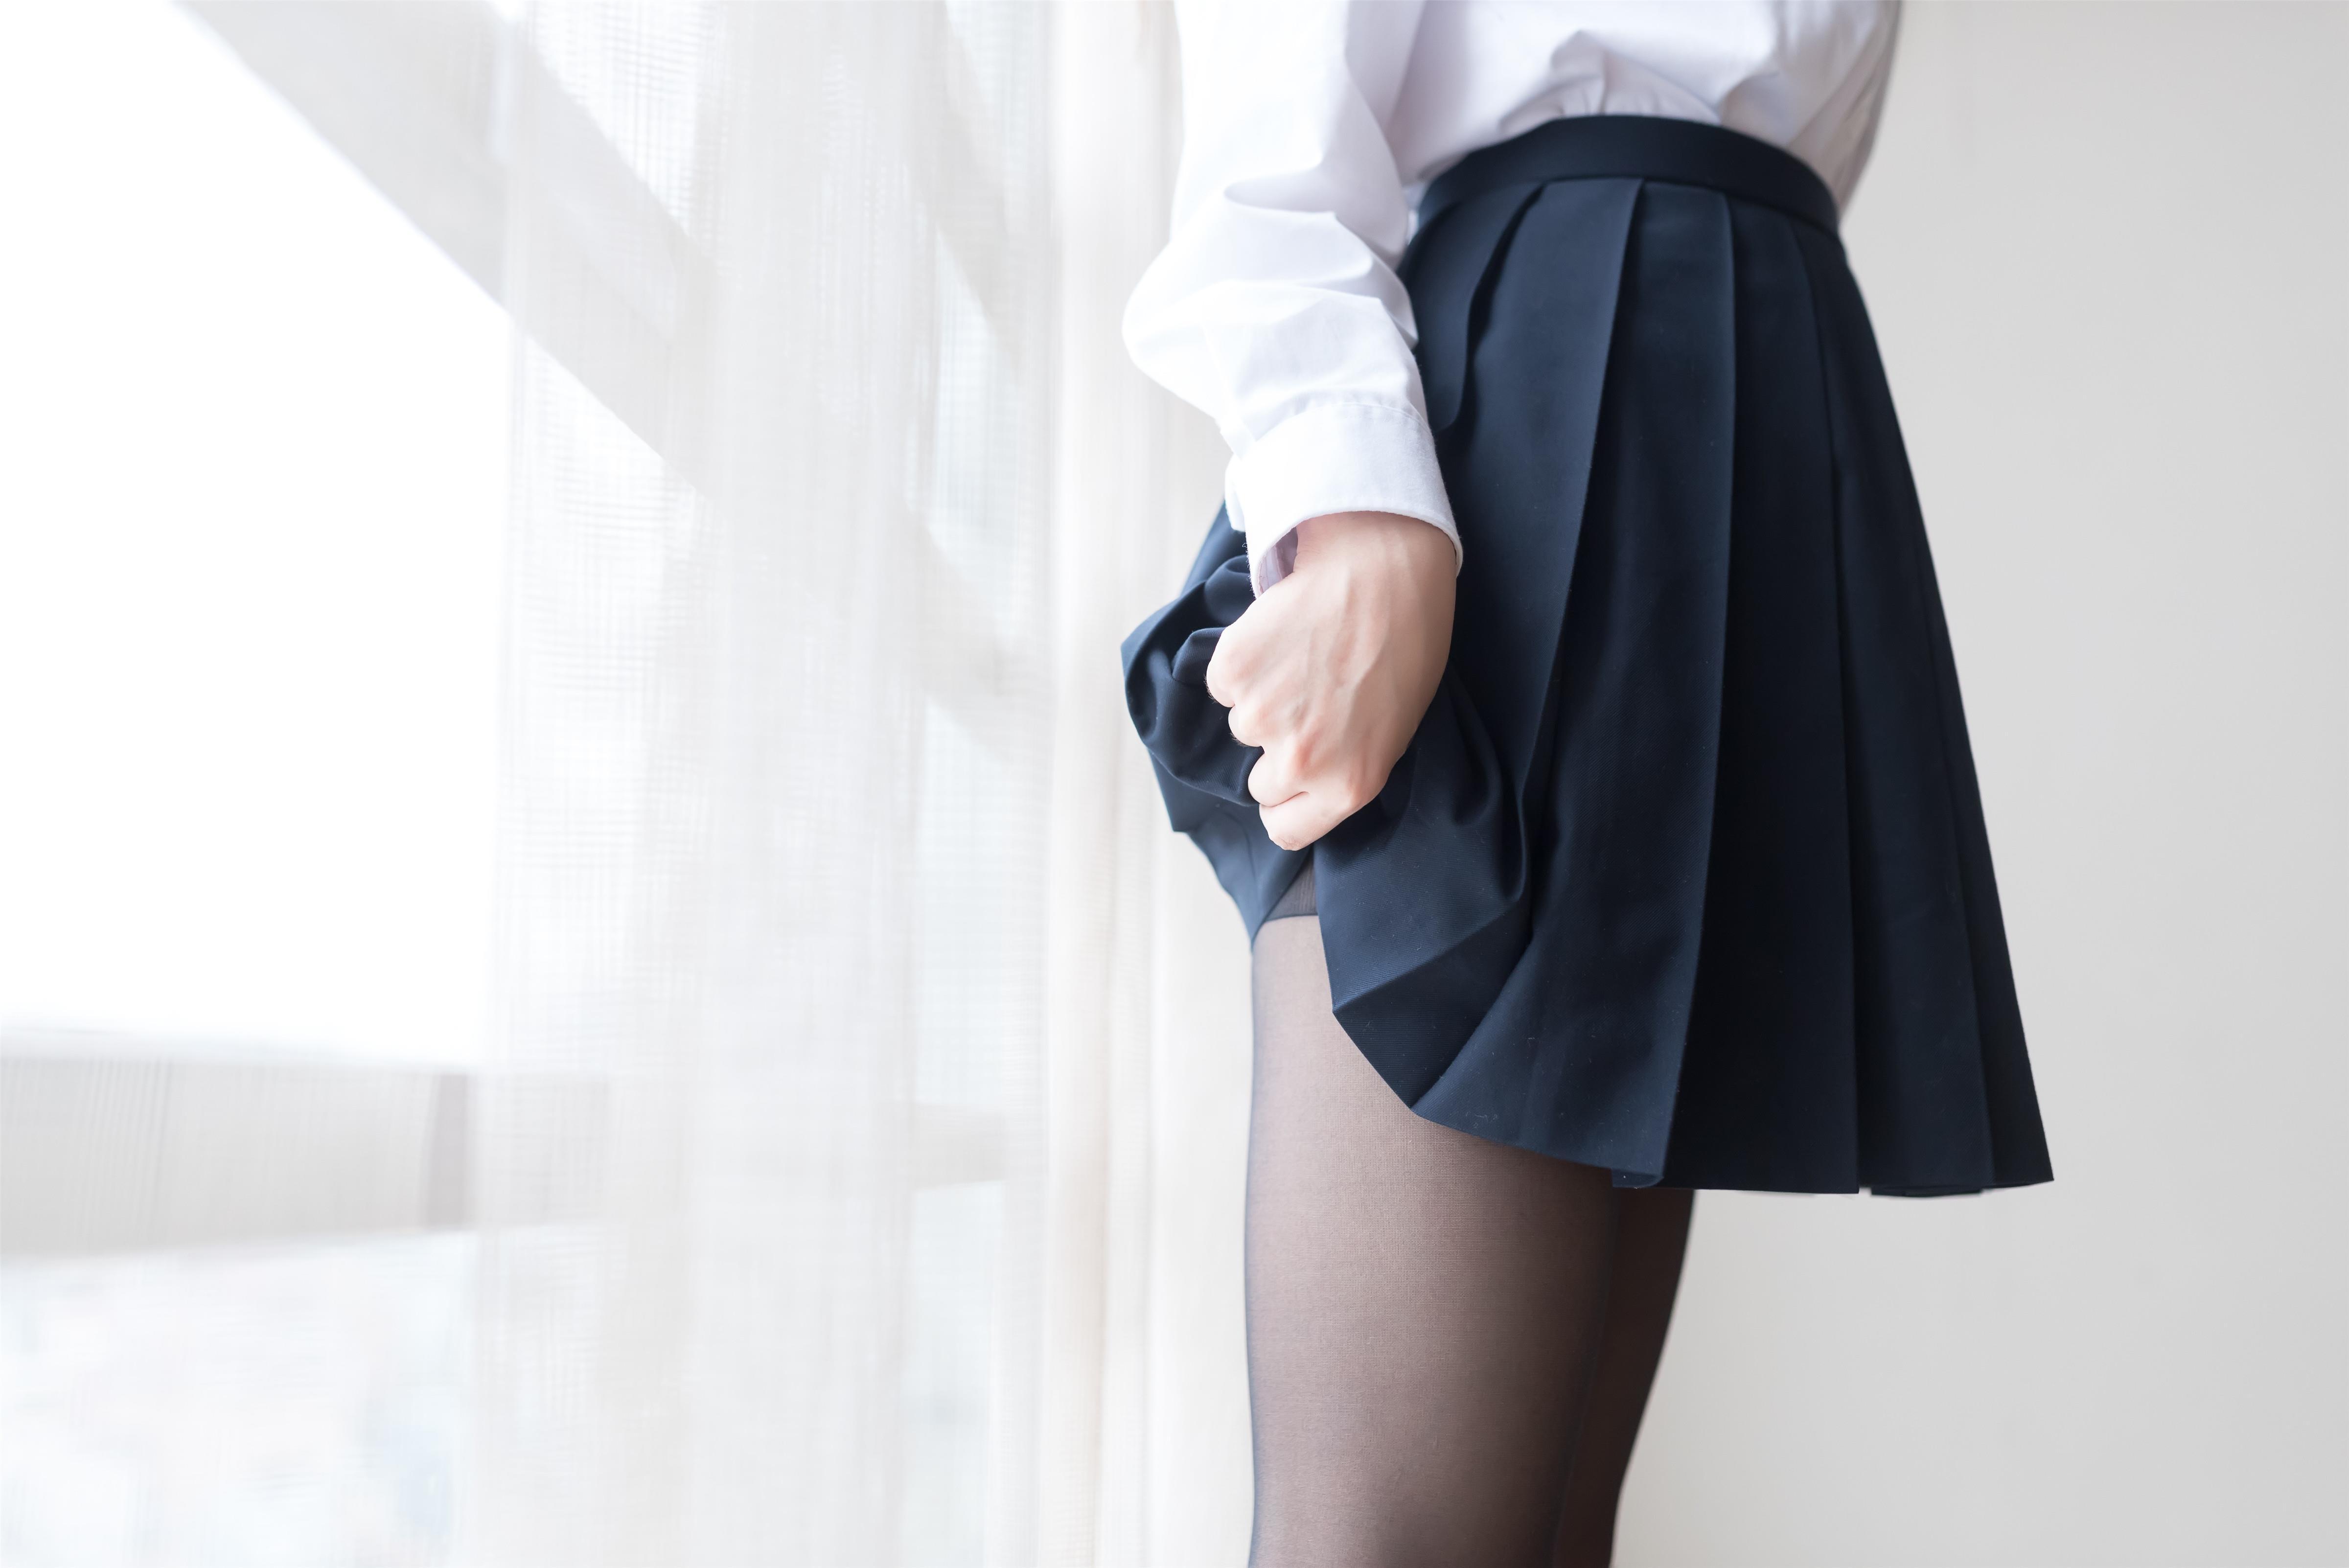 [风之领域]NO.048 性感高中女生 白色衬衫与黑色短裙加黑色丝袜美腿私房写真集,